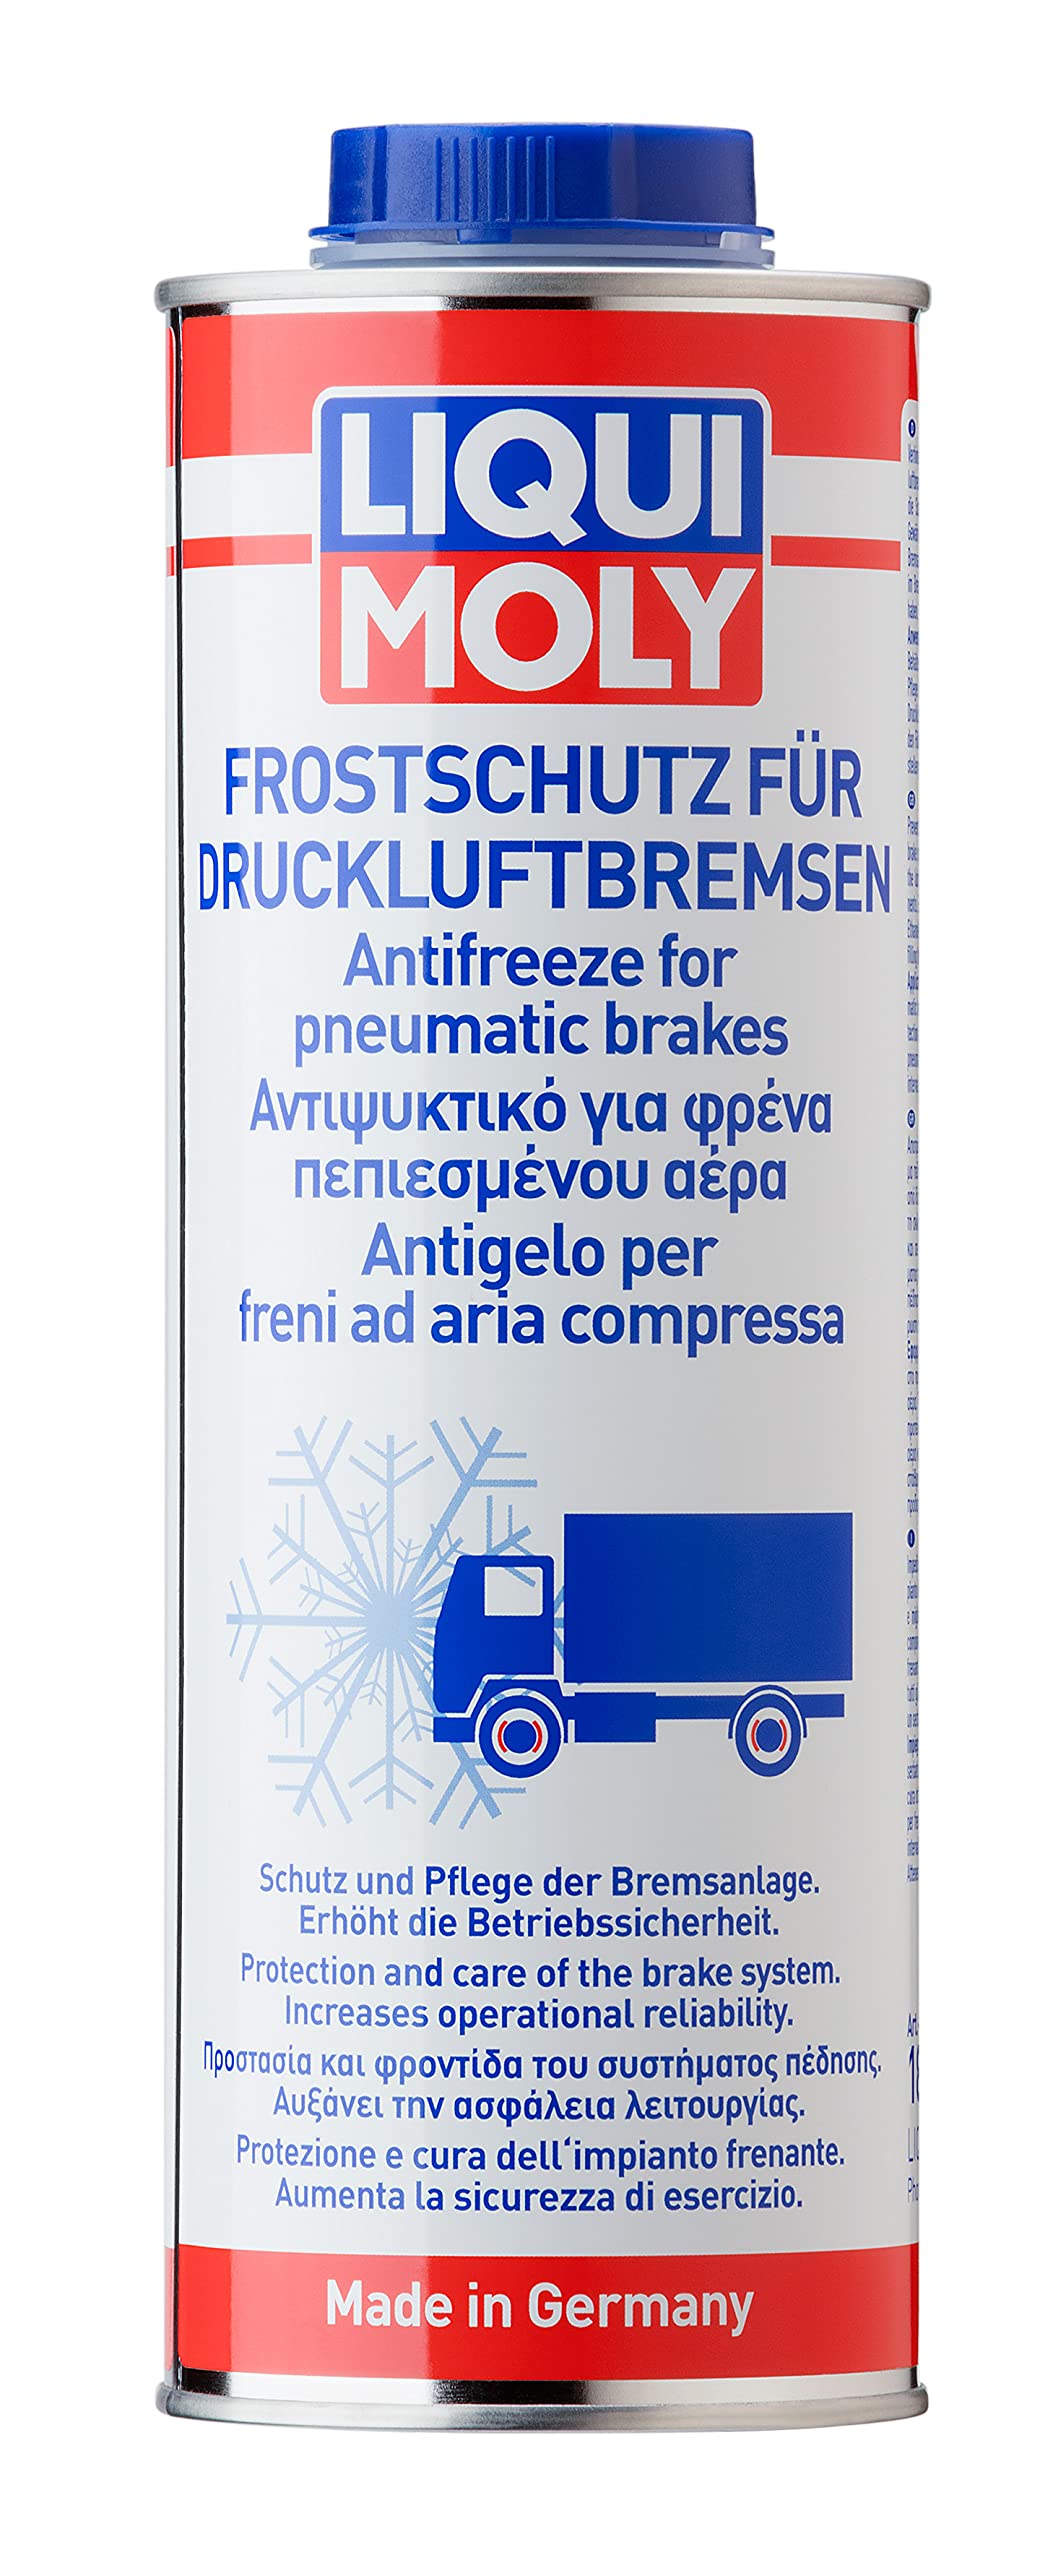 LIQUI MOLY Frostschutz für Druckluftbremsen | 1 L | Winterprodukt | NFZ-Additiv | Art.-Nr.: 1828 von Liqui Moly